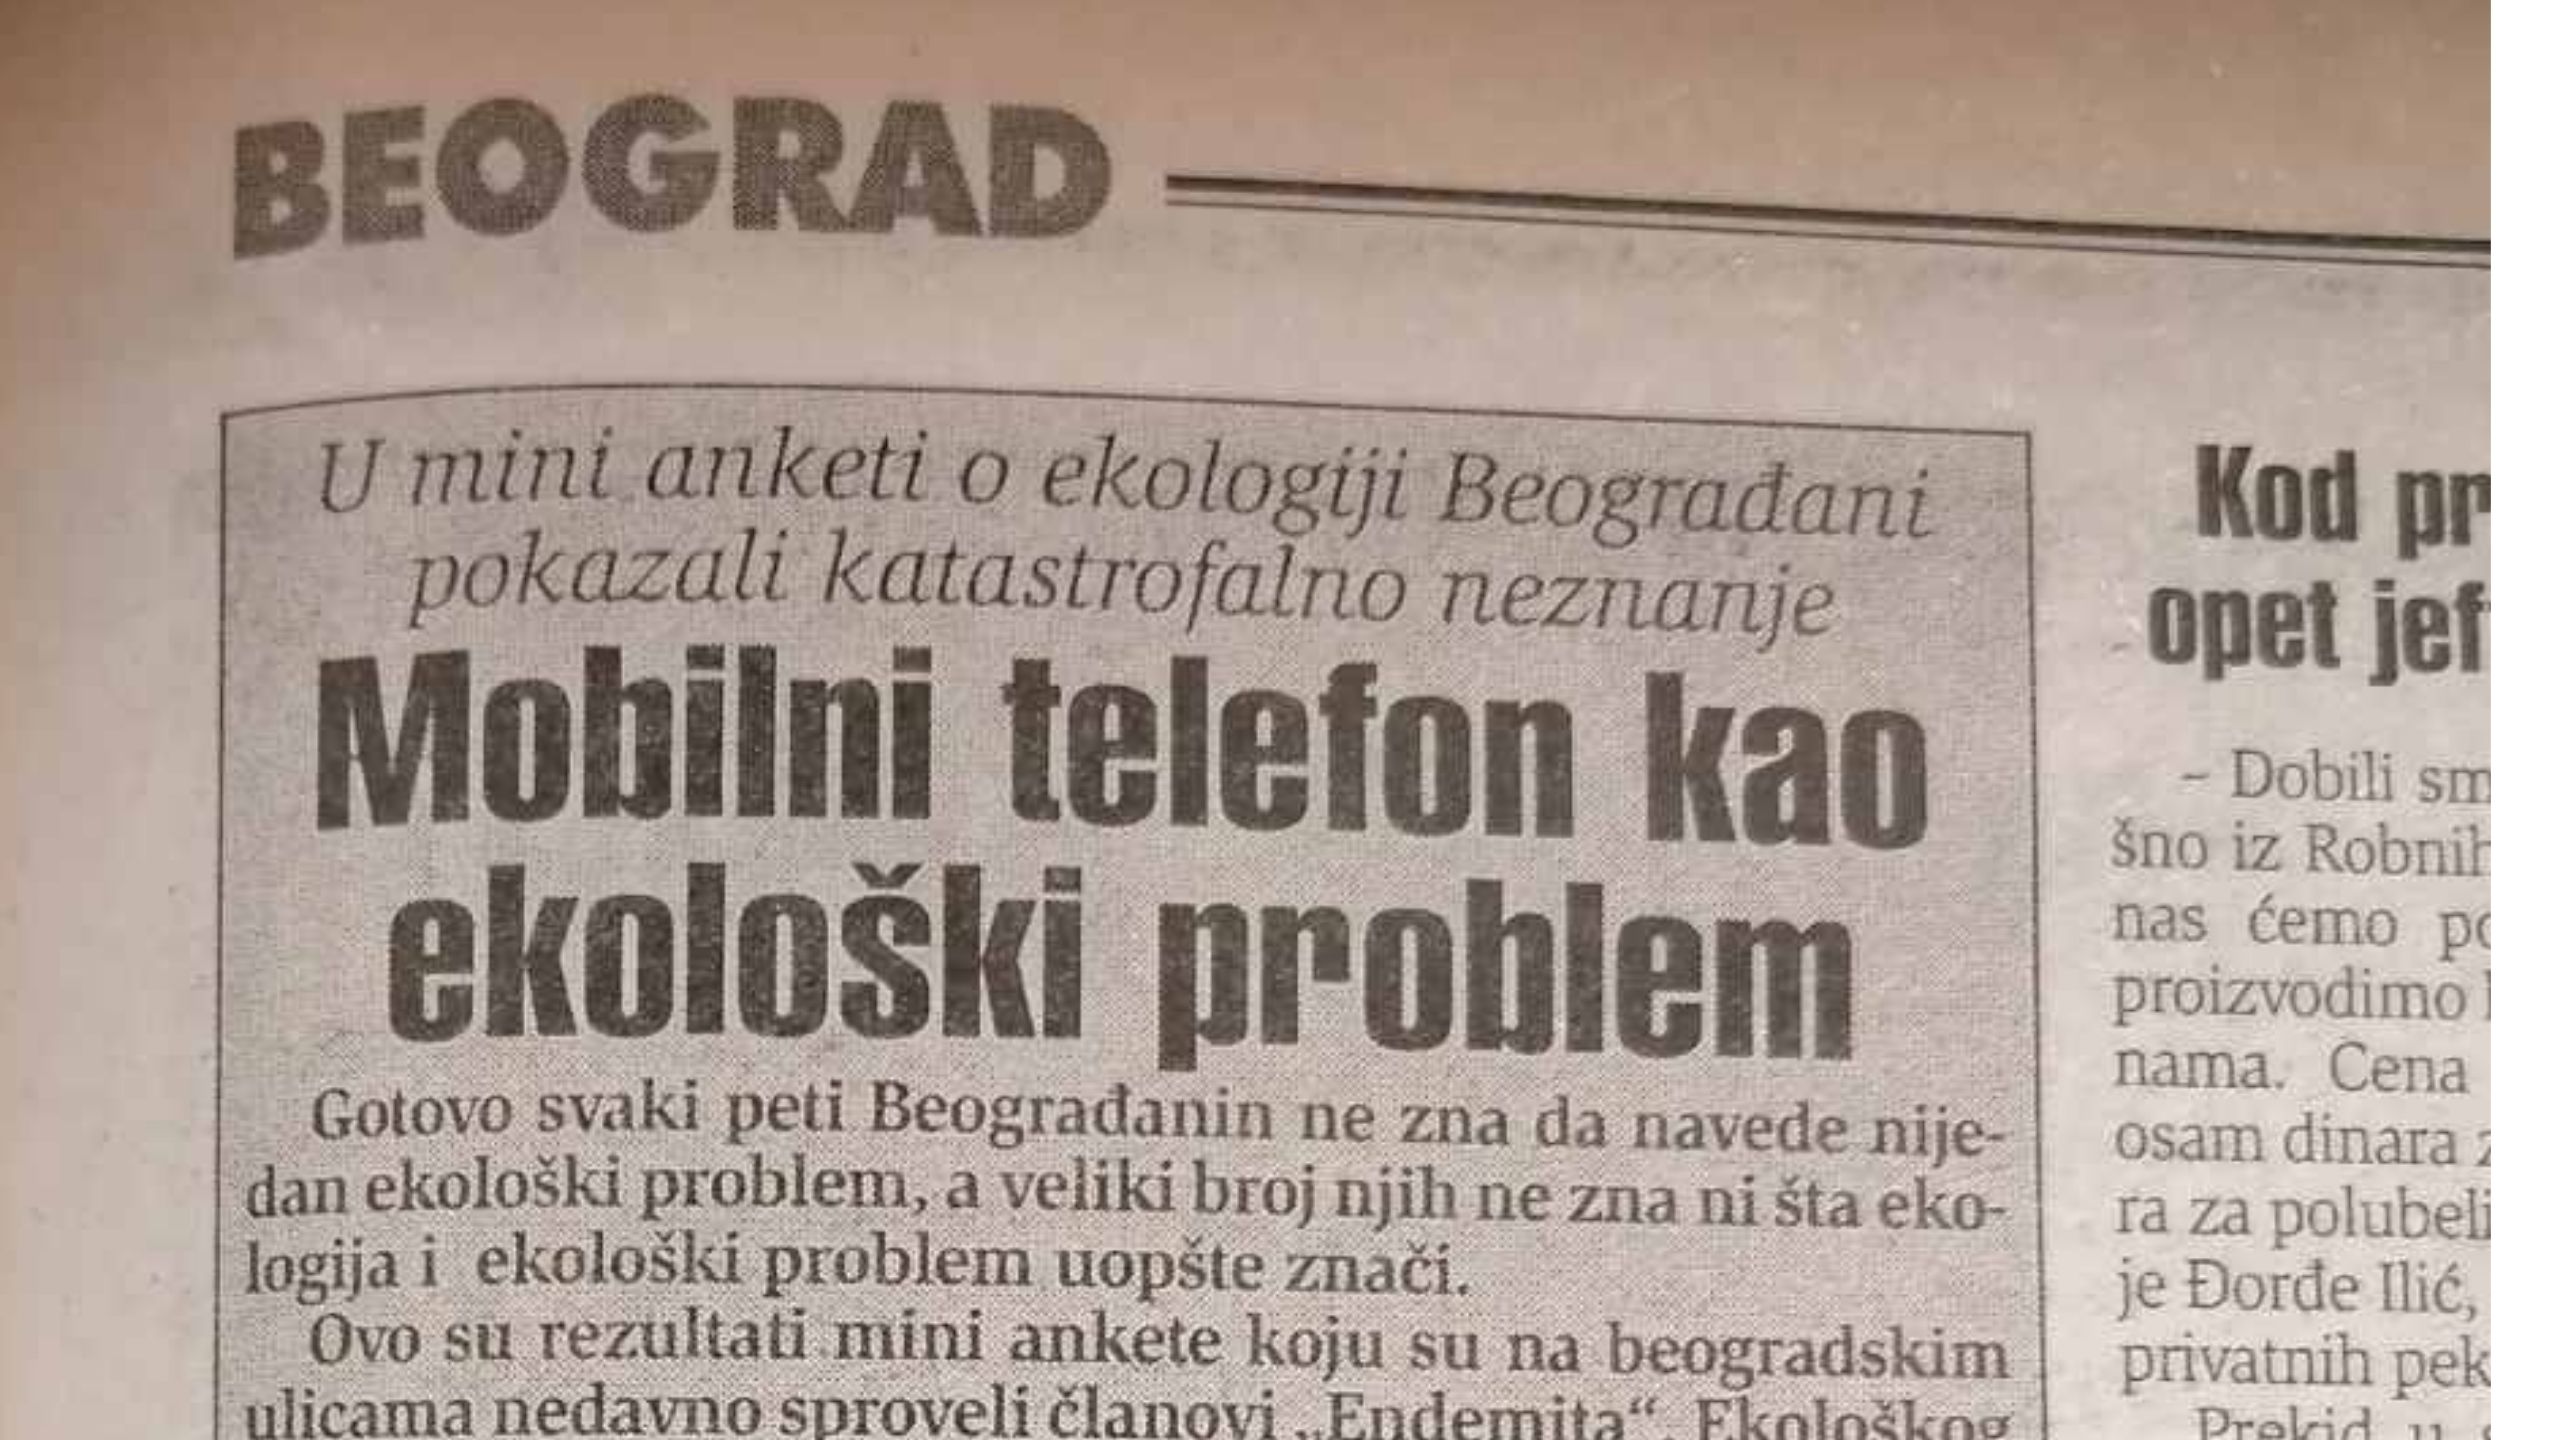 Beograđani pre 20 godina slabo prepoznavali ekološke probleme 1